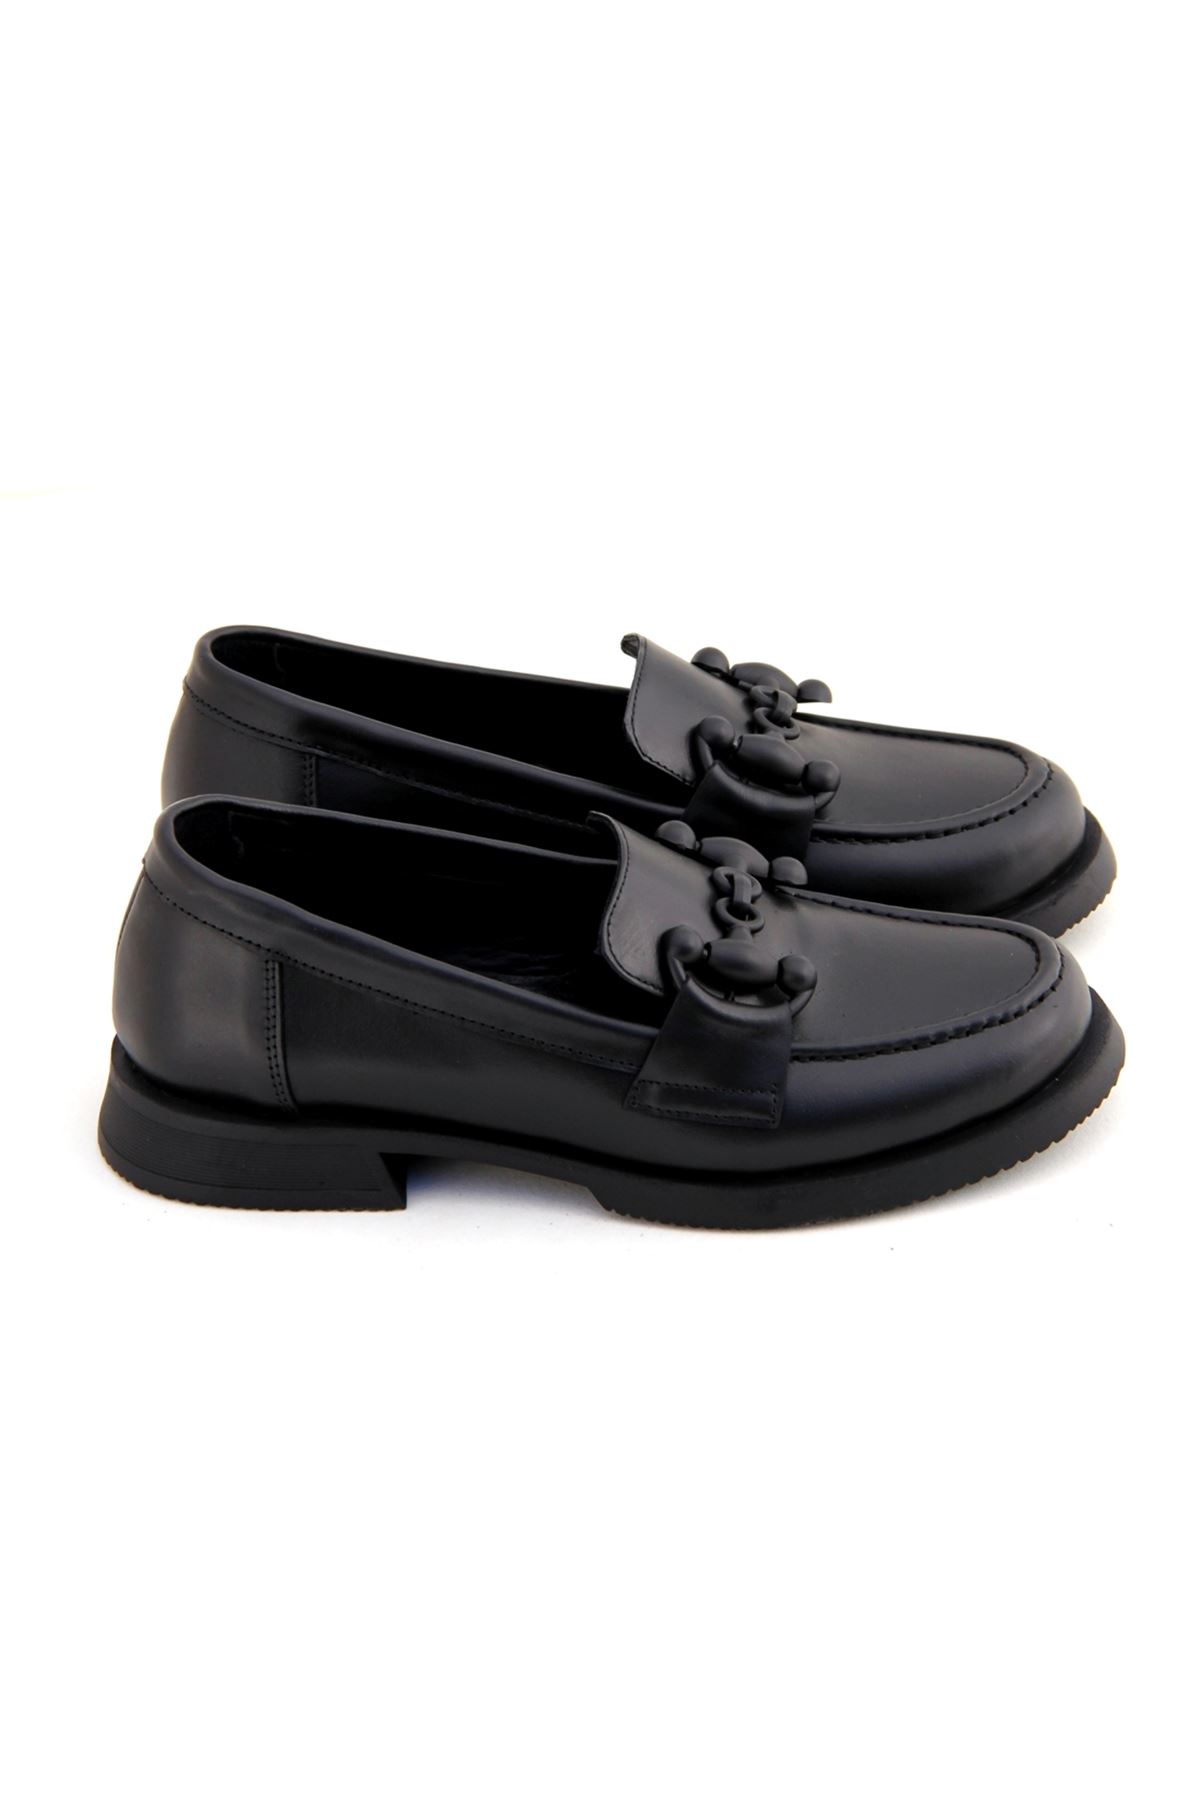 Albini 10730 Hakiki Deri Kadın Ayakkabı - Siyah